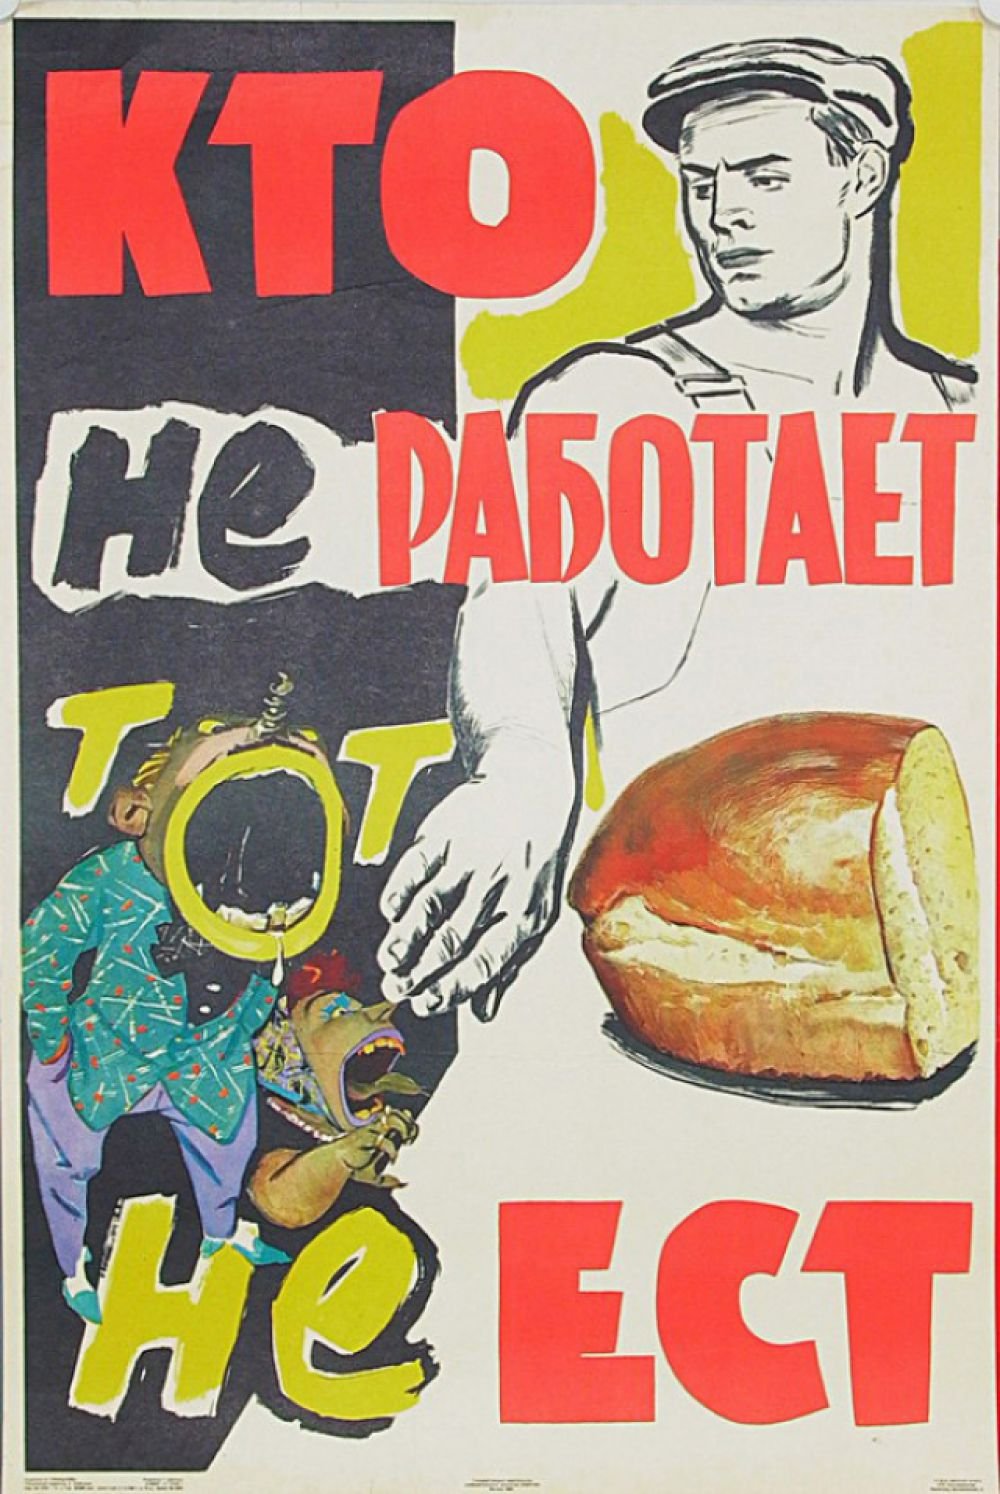 Советские автомобильные плакаты